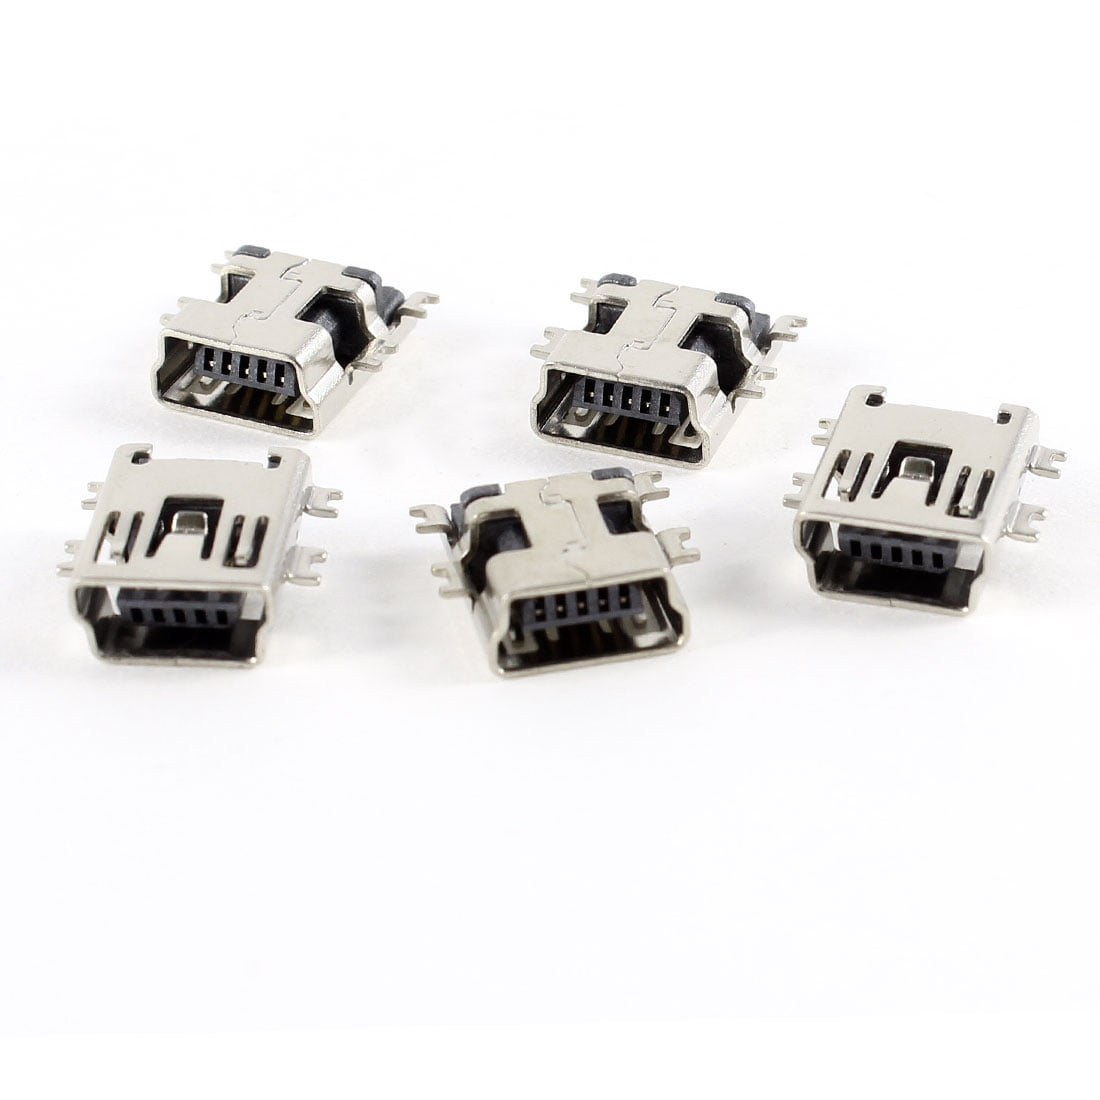 20 Pcs Micro USB Type B Female 5-Pin Socket 180 SMD Soldering Degree  JnRIK7T 